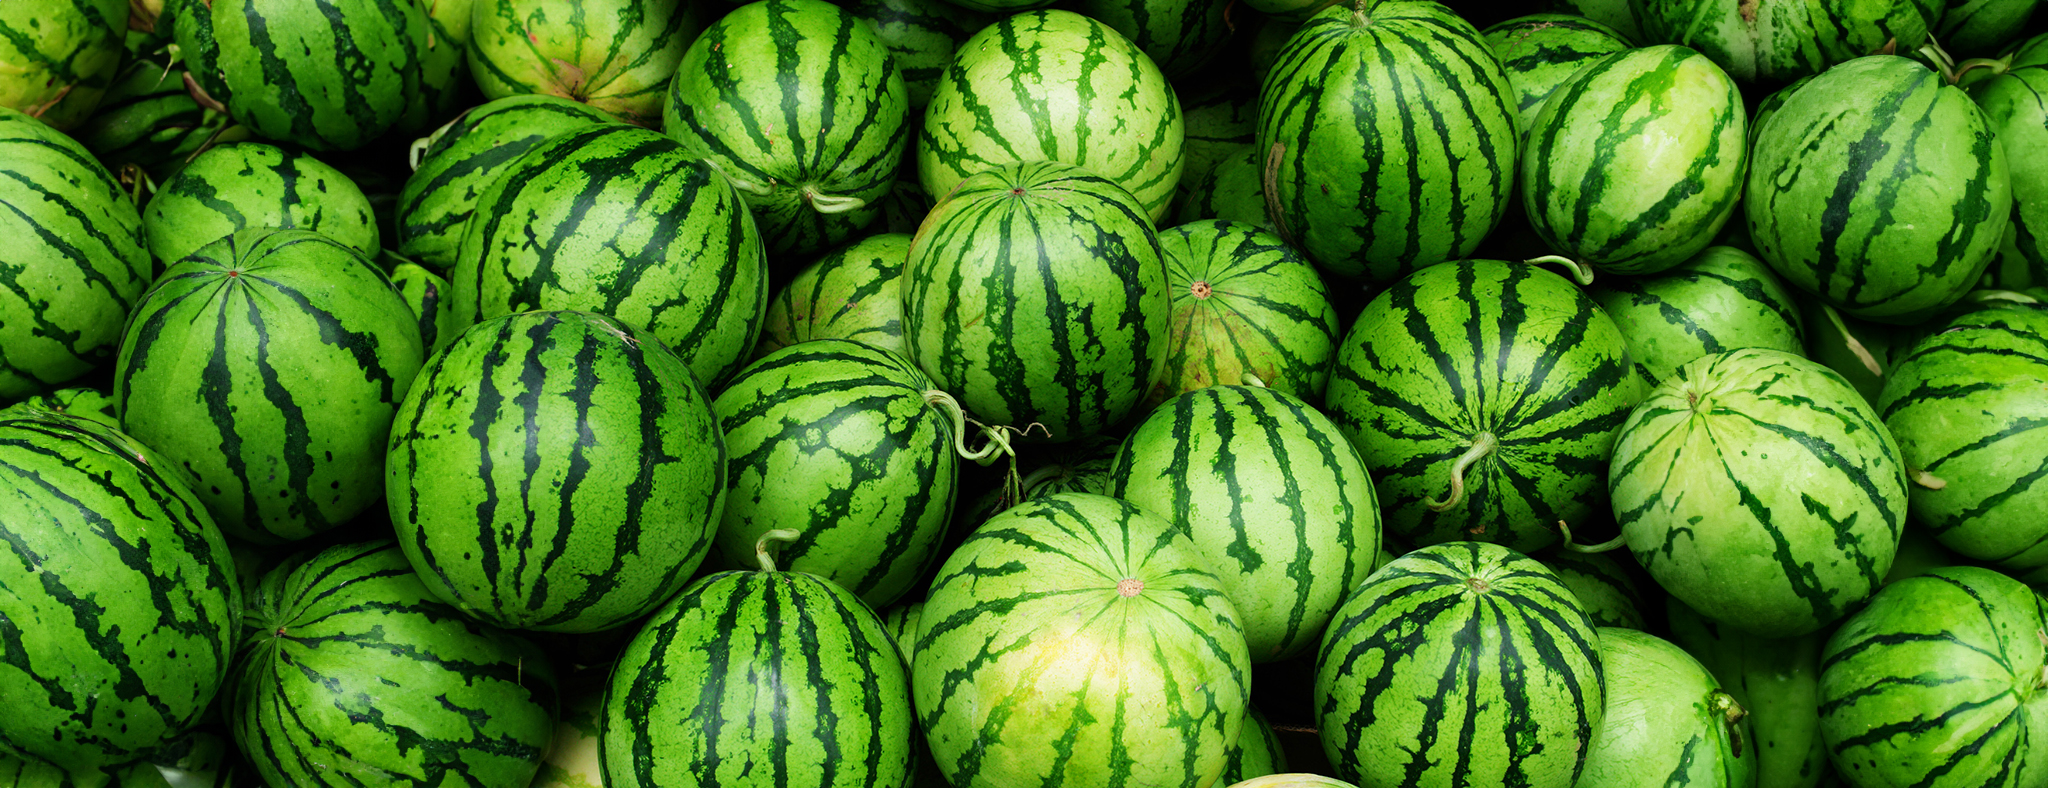 Wholesale watermelon in bulk from Turkey